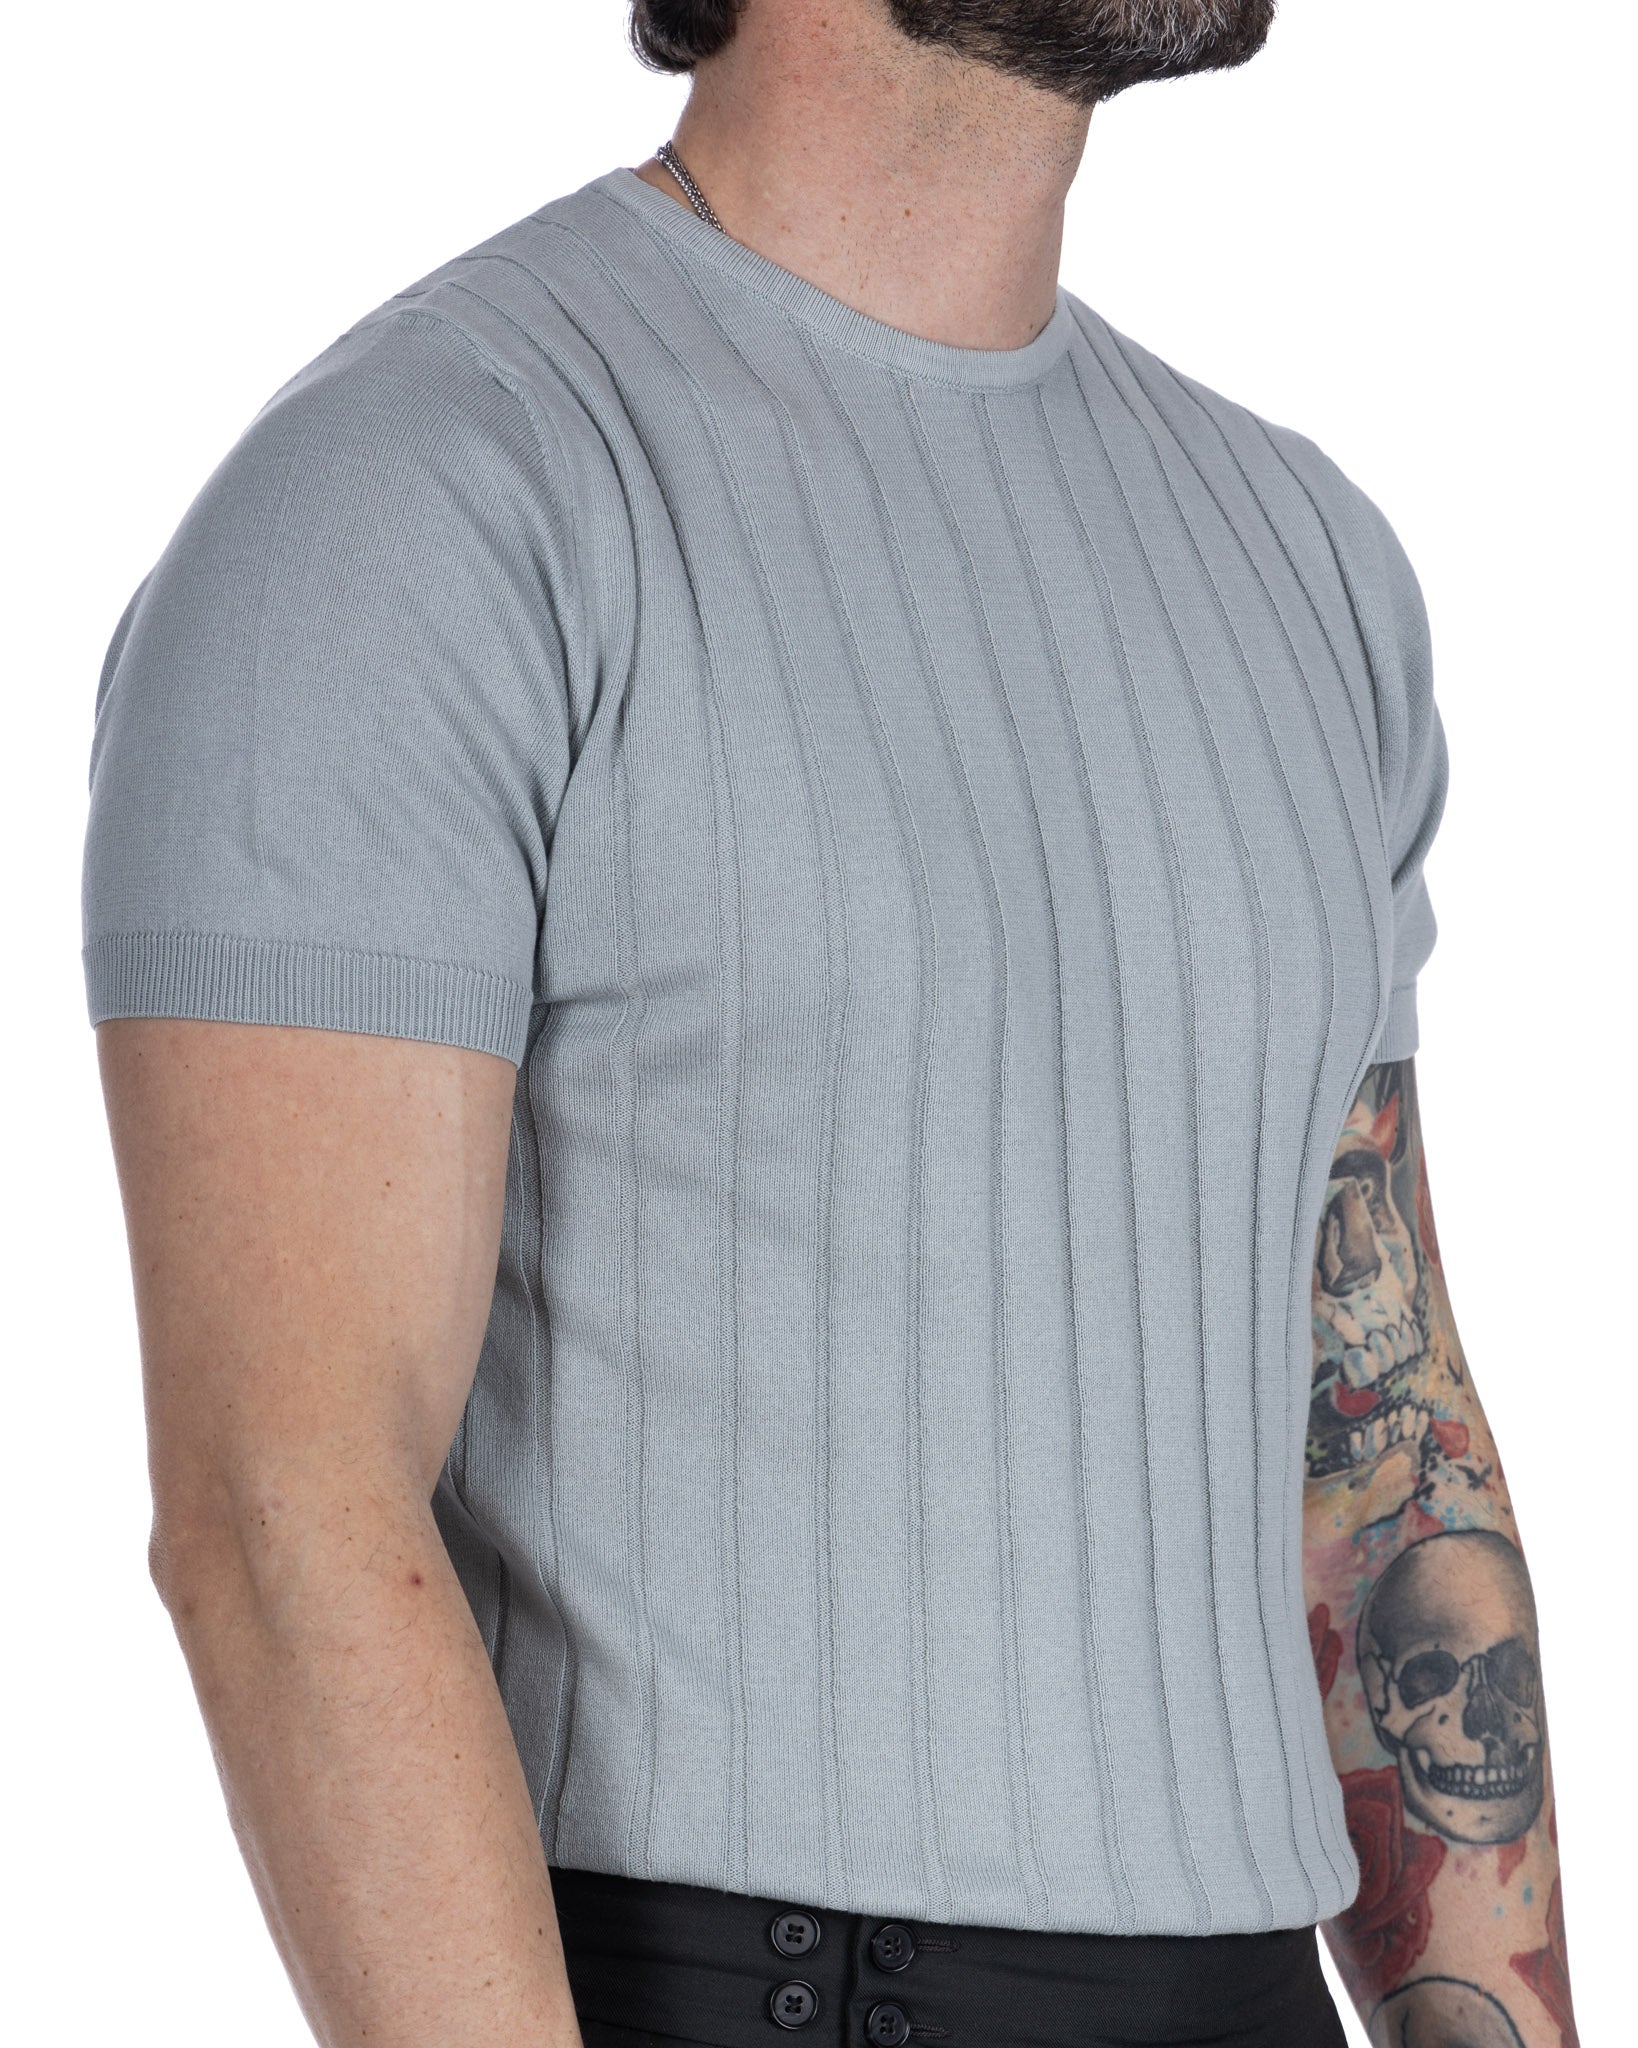 Andreas - t-shirt en maille côtelée gris clair